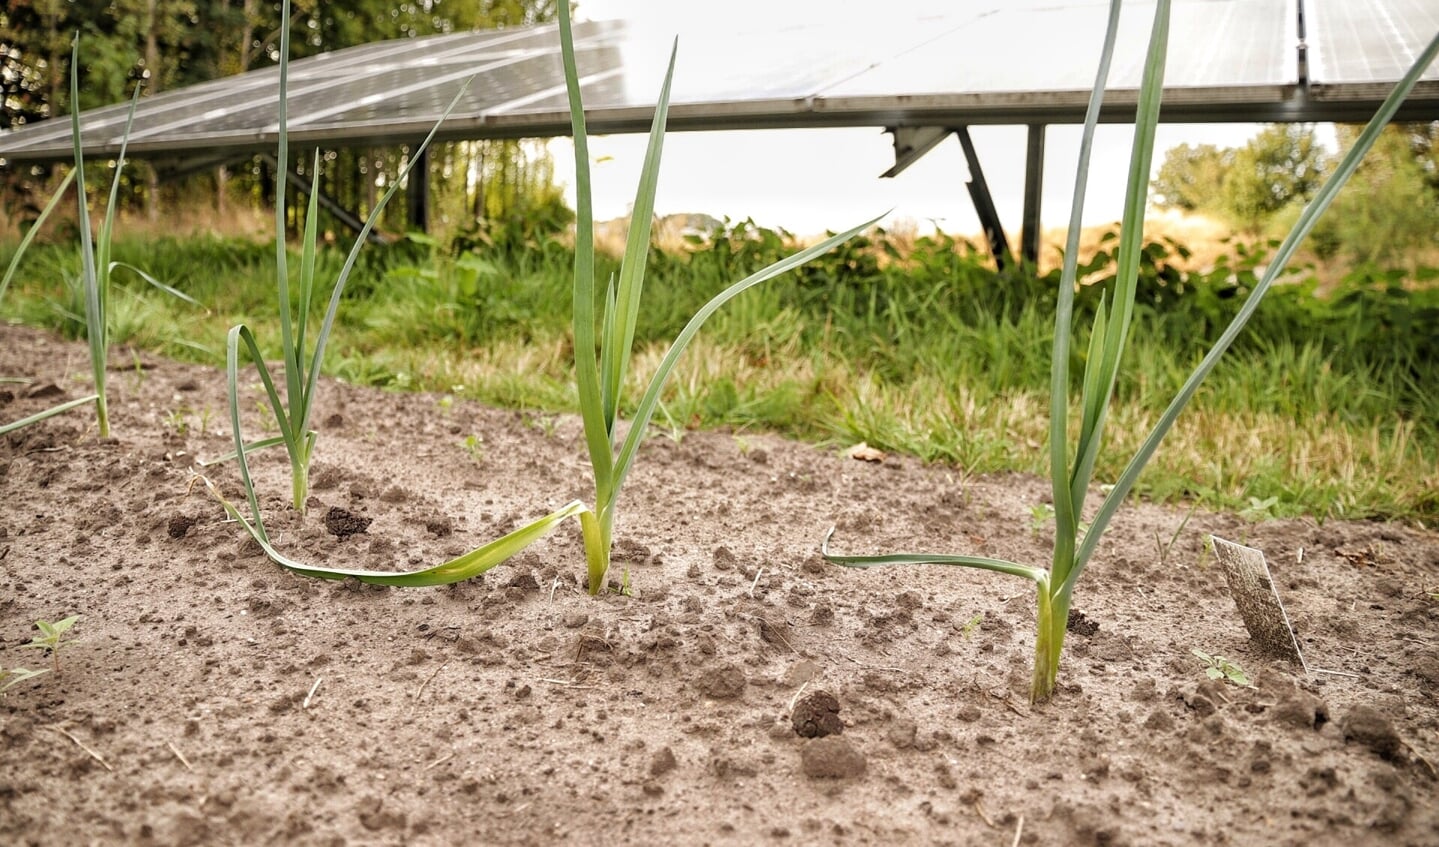 Groenten groeien goed in Solarpark de Kwekerij in Hengelo. Foto: Jonny Lawson 